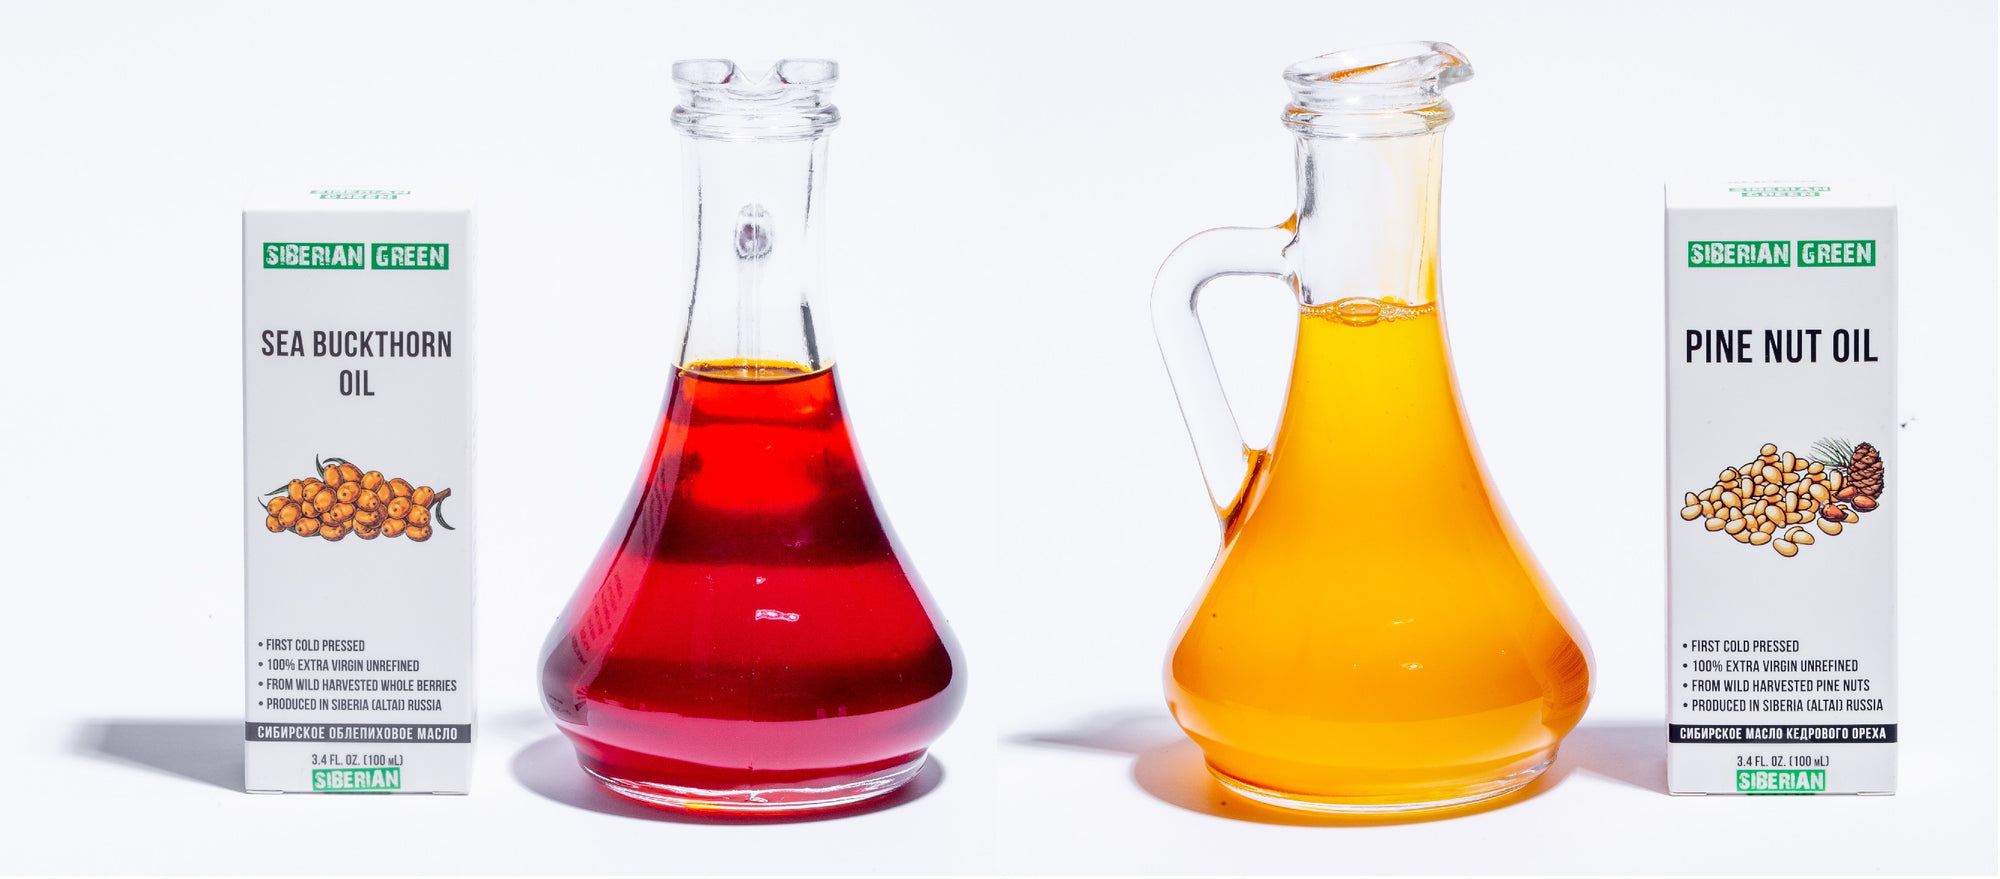 What oil is better for gastritis - pine nut oil vs sea buckthorn oil?